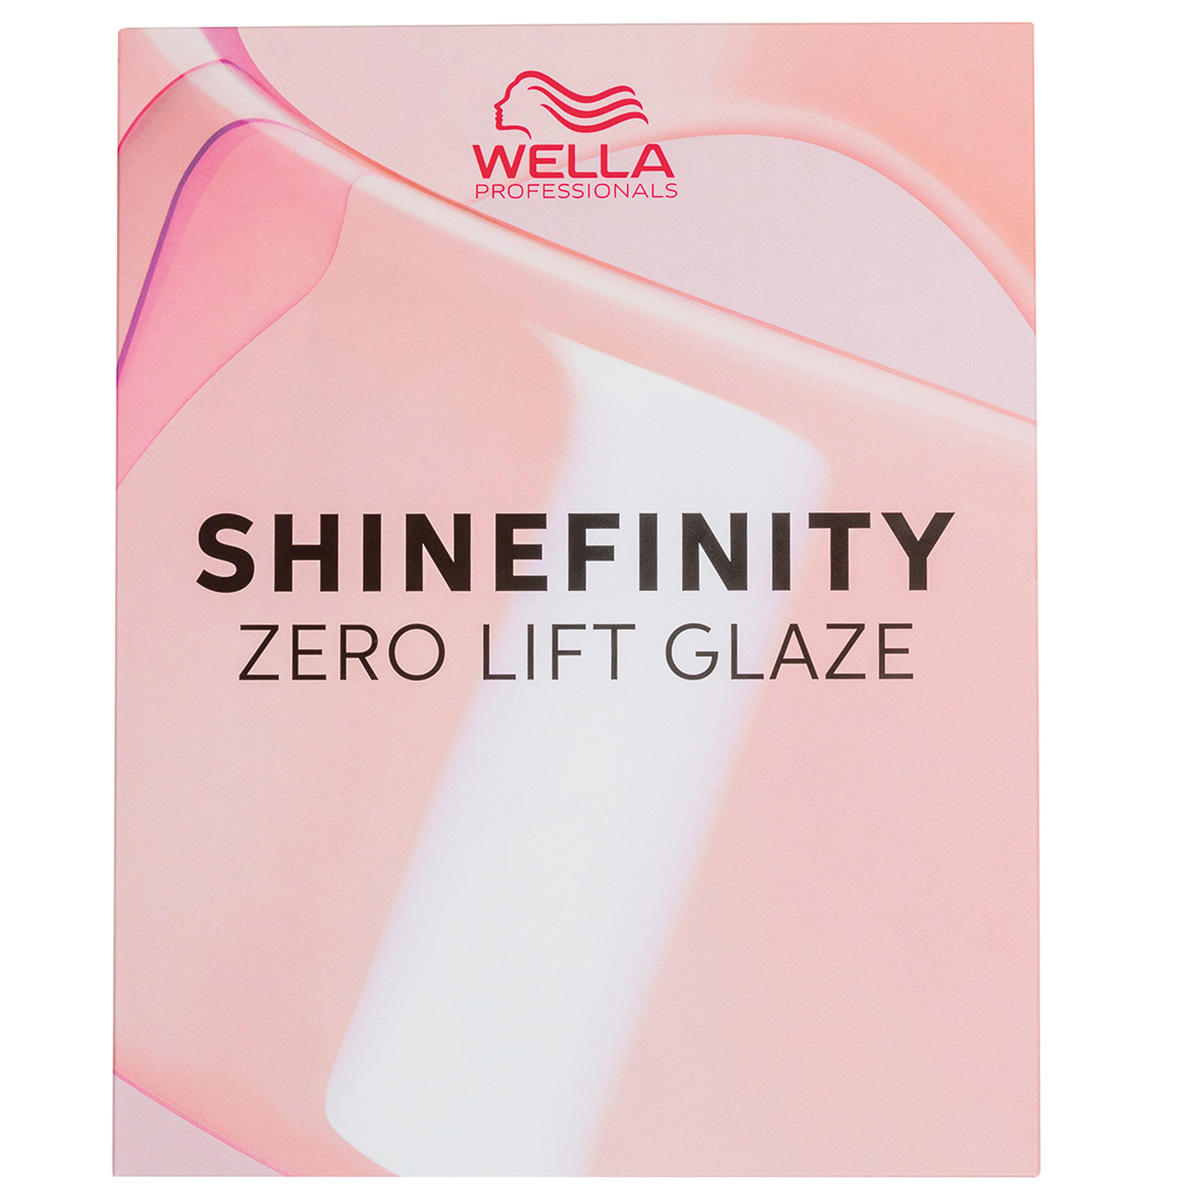 Wella Shinefinity Tabella dei colori  - 1